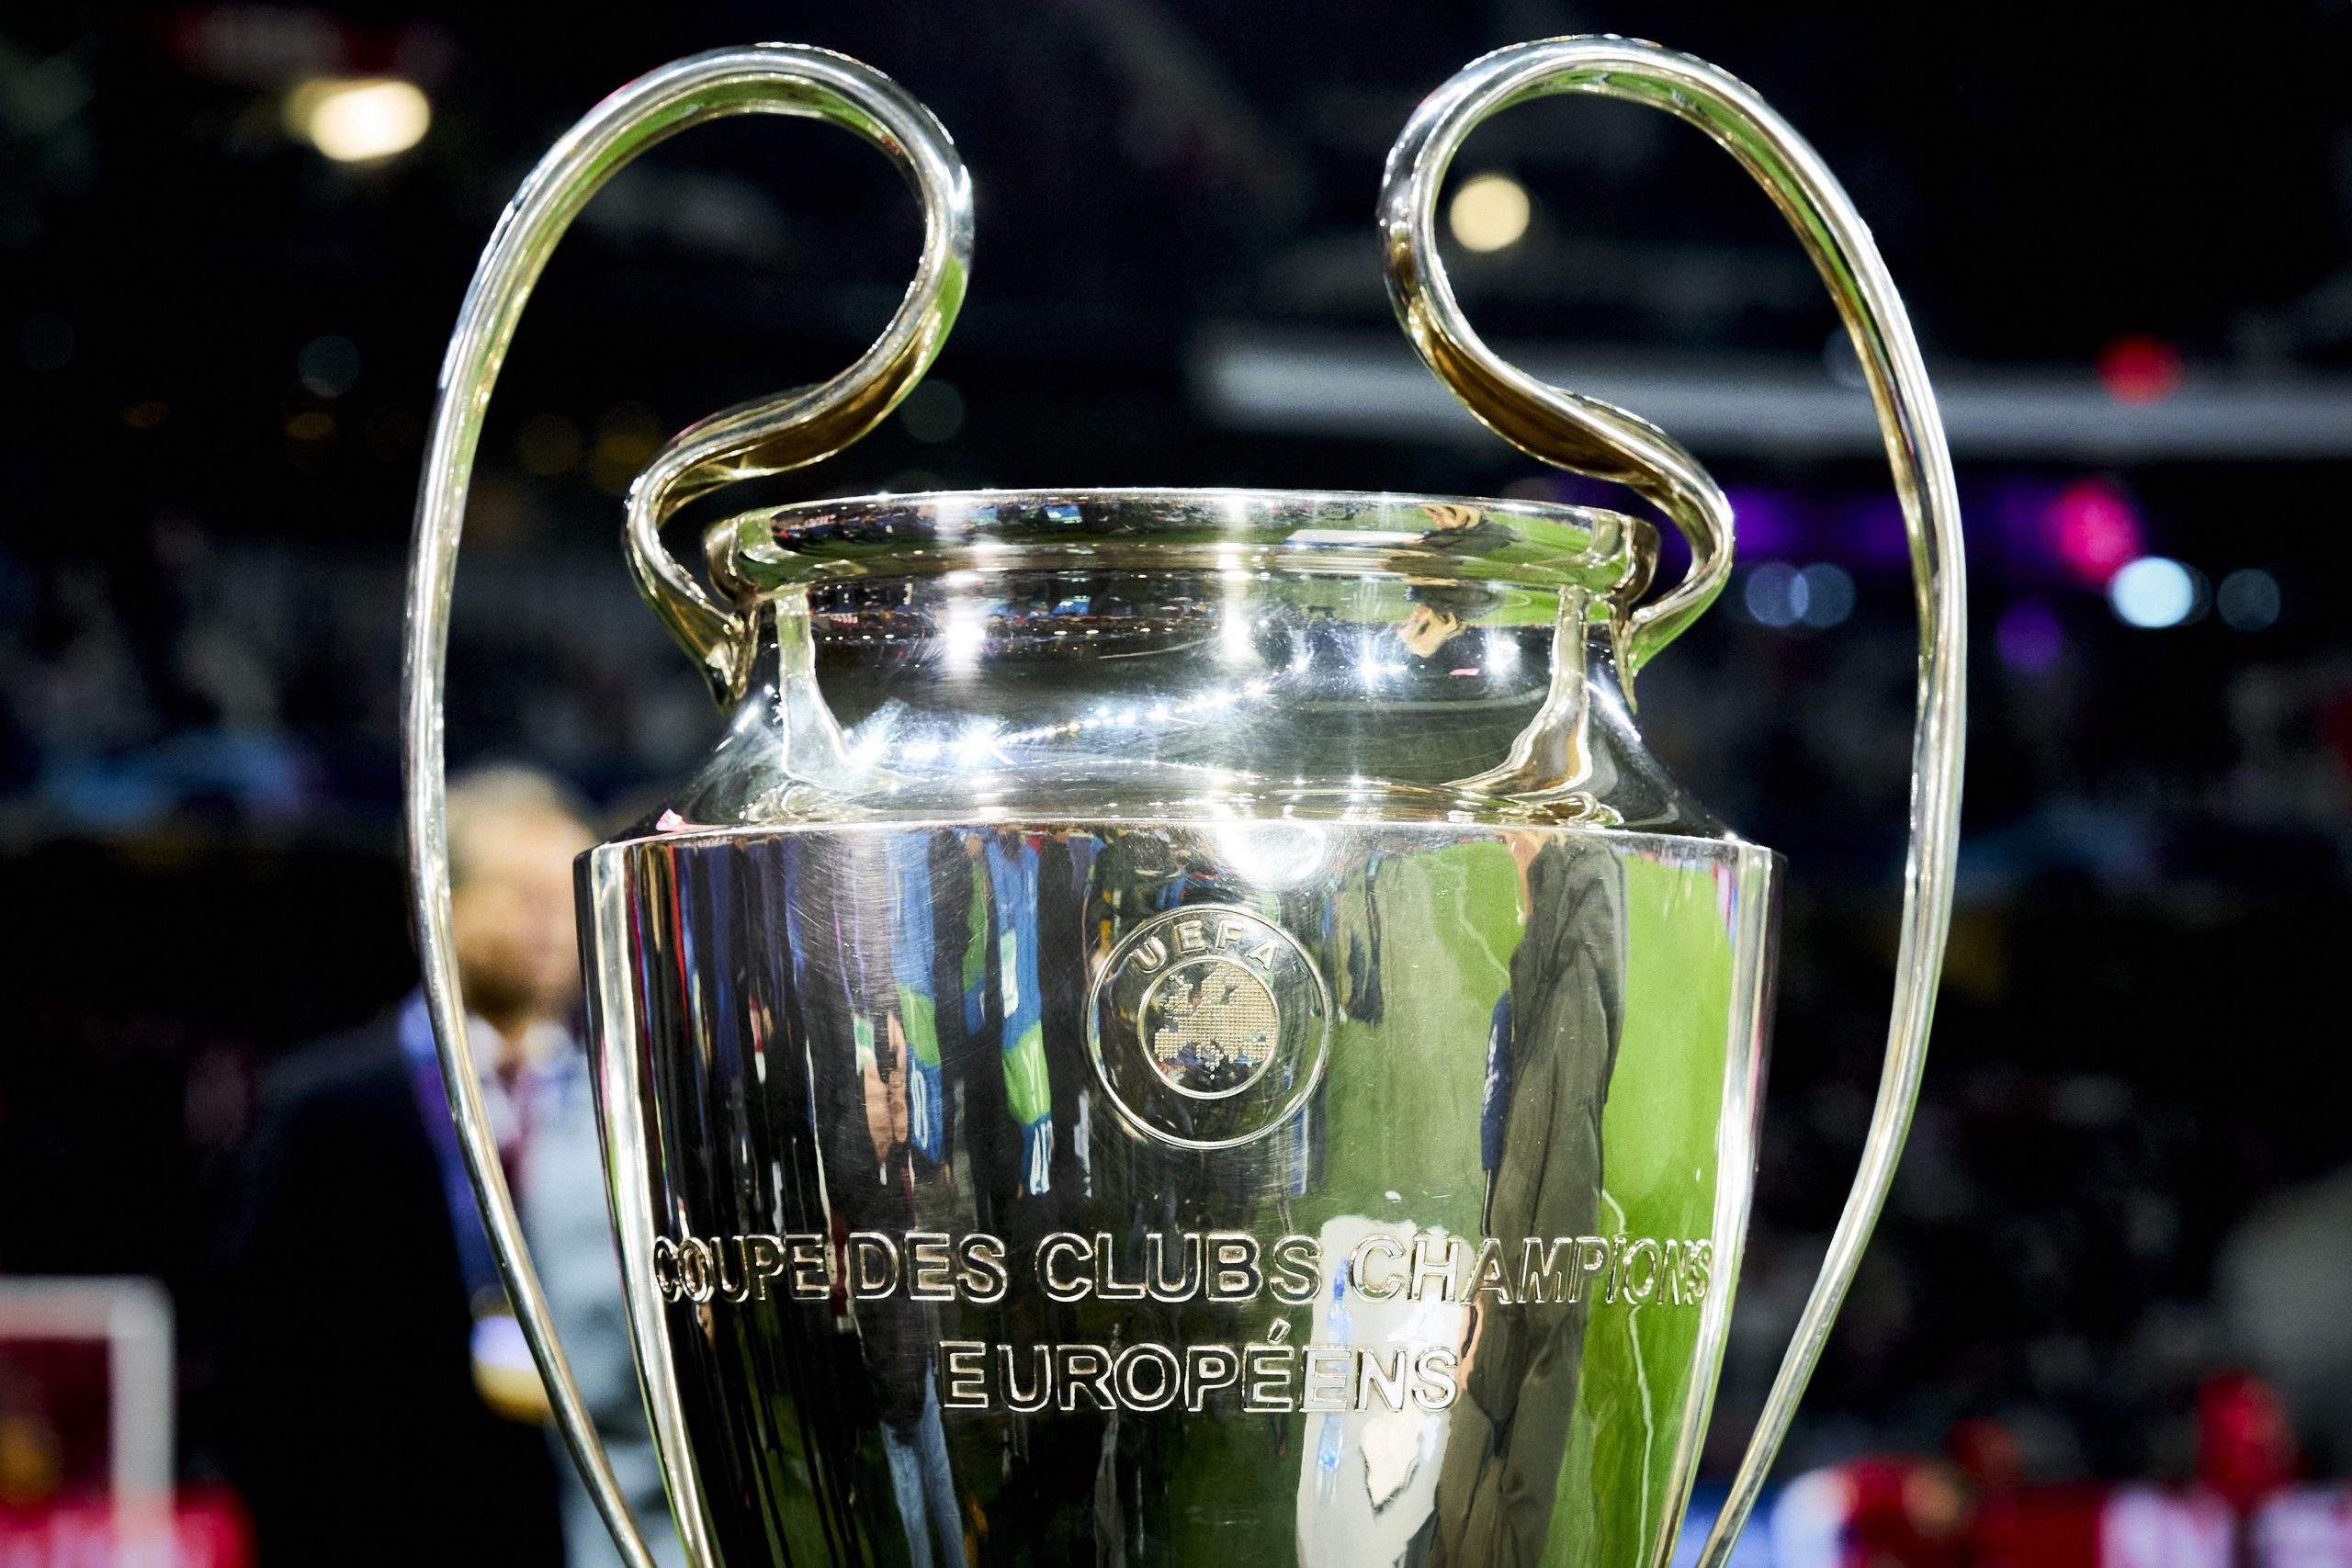 champions league 2019 trophy